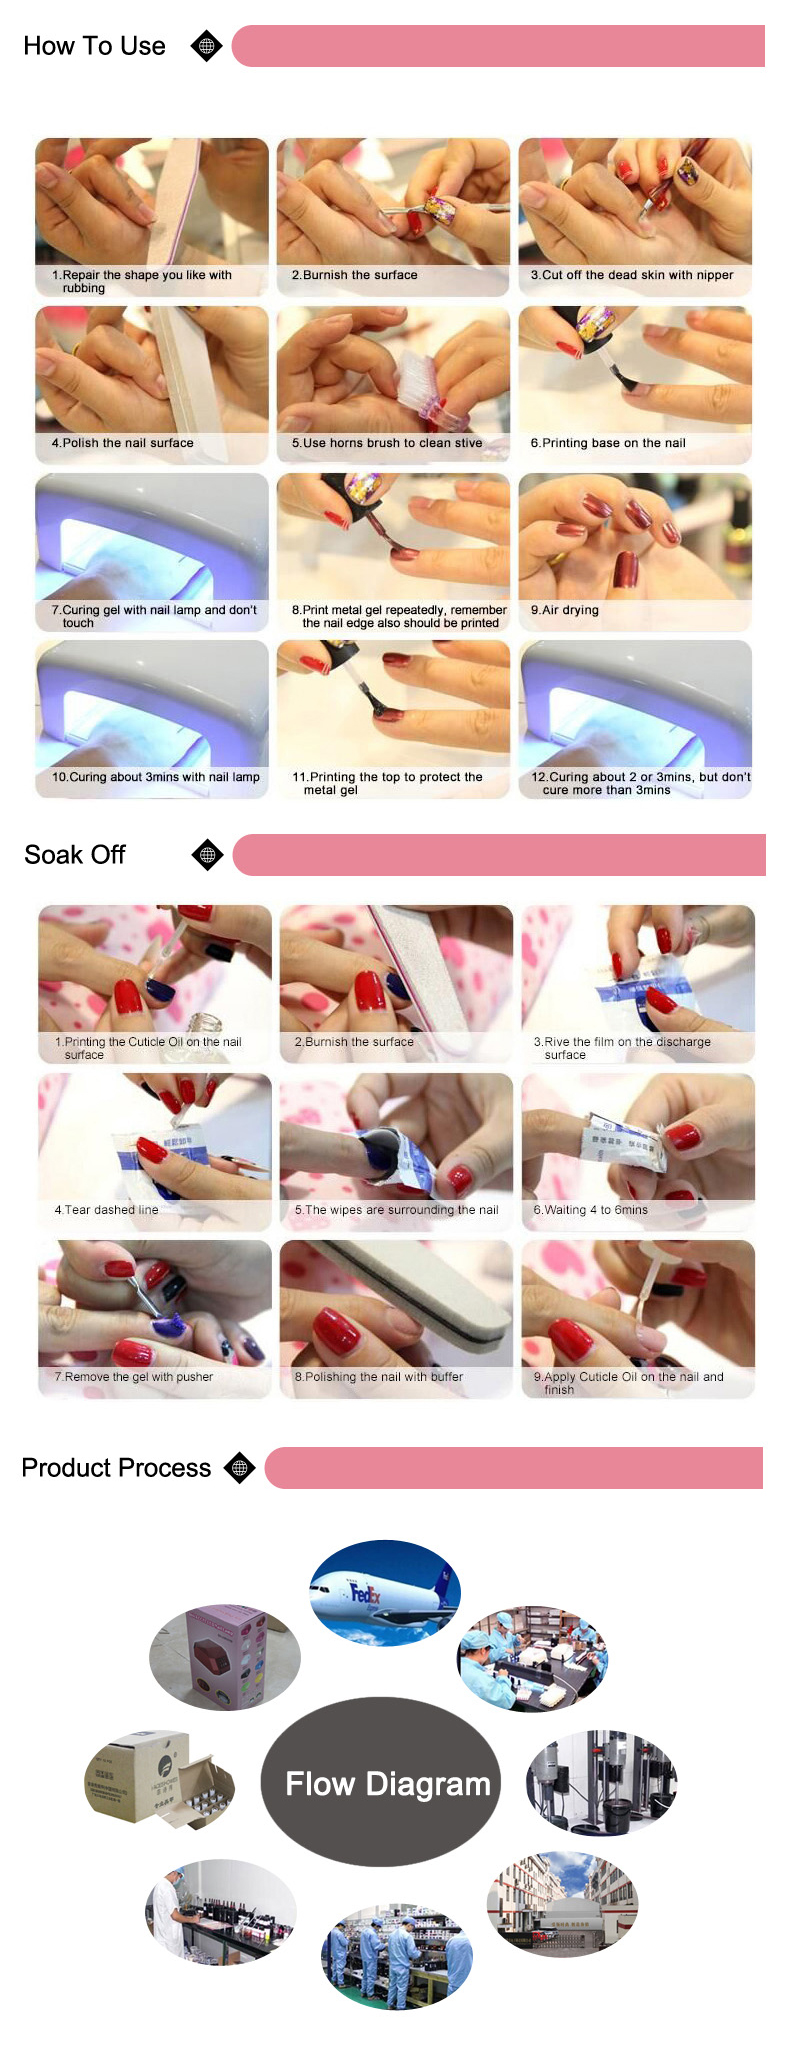 gel polish curing nail dryer 50w uv led nail lamp for nail